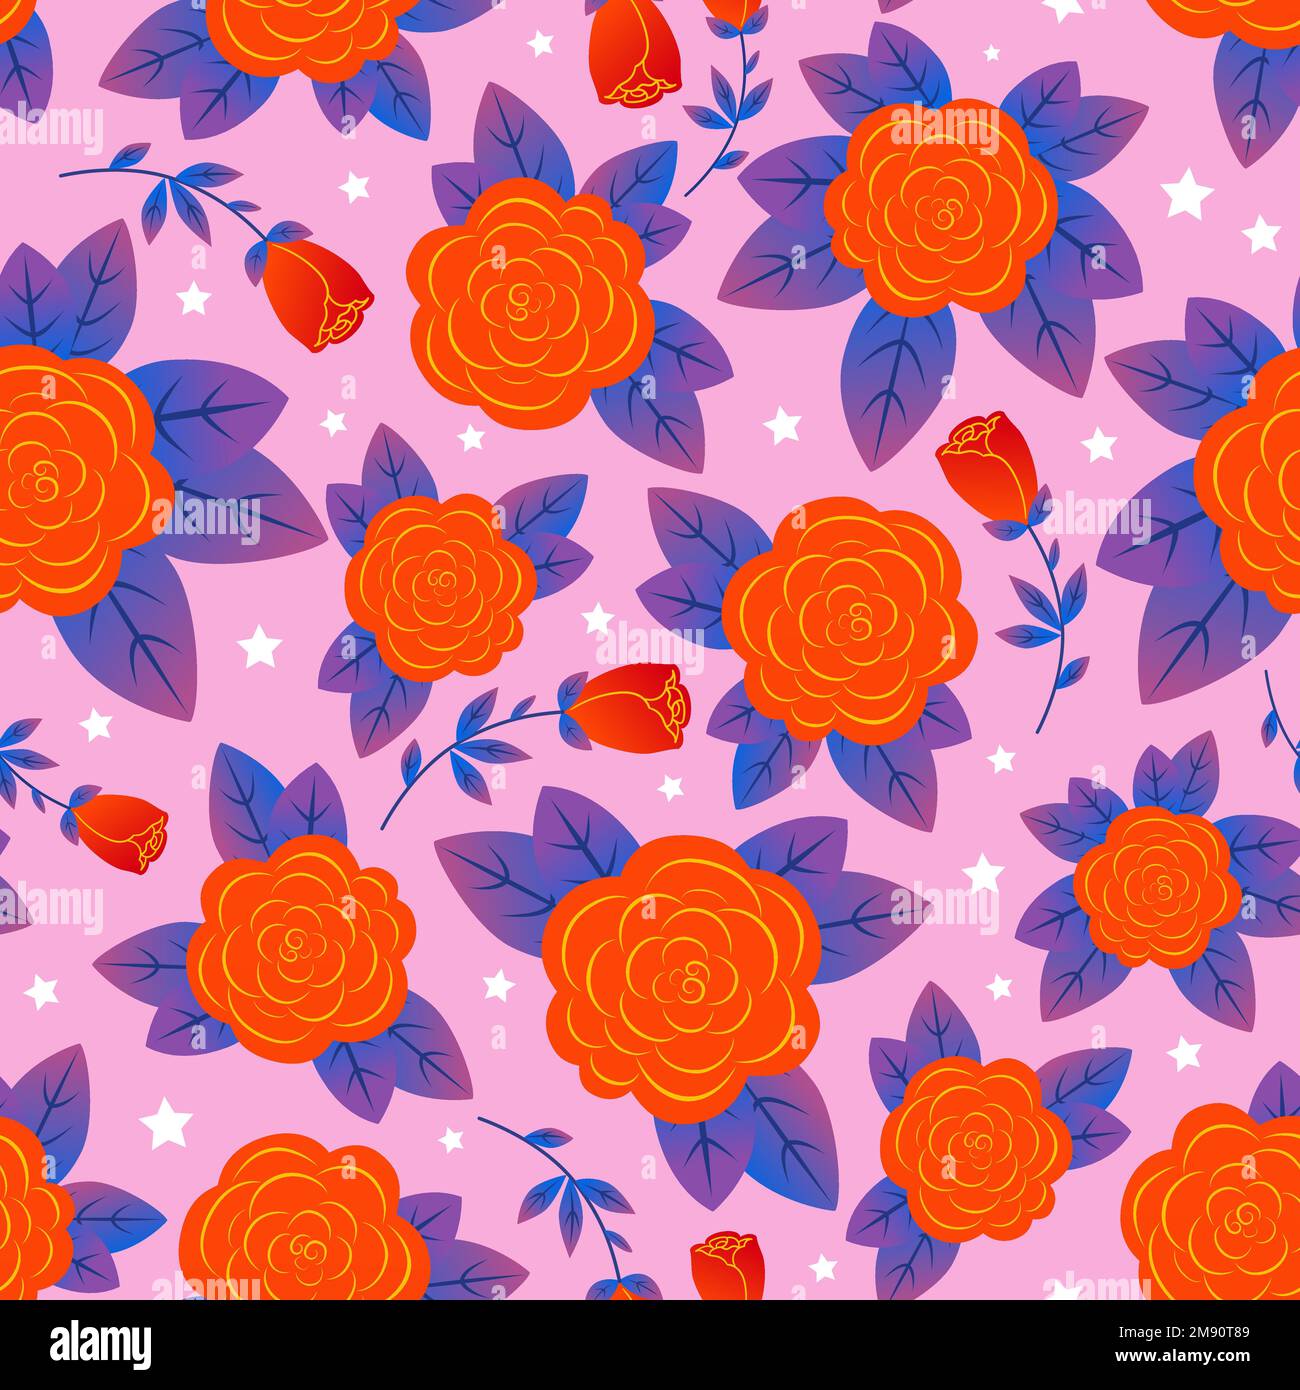 Nahtloses Blumenmuster mit roten Rosen auf pinkfarbenem Hintergrund. Für Stoffdesign, Tapeten, Hintergründe, Sammelalben, Verpackungen, Geschenkpapier usw. Stock Vektor